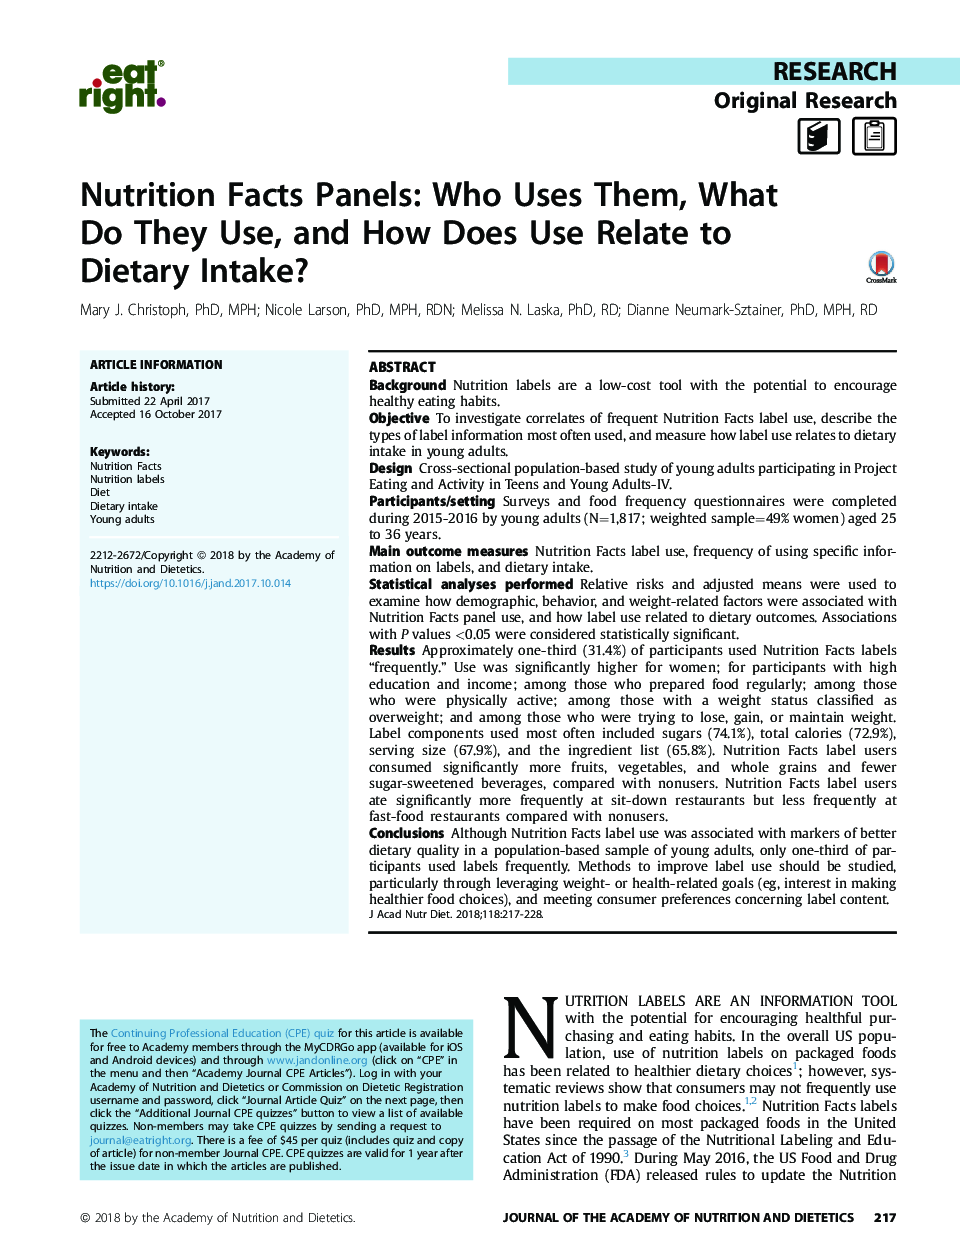 پانلهای مربوط به تغذیه: چه کسی از آنها استفاده می کند، چه چیزی از آنها استفاده می کند و چگونگی استفاده از آنها در رابطه با مصرف مواد غذایی چیست؟ 